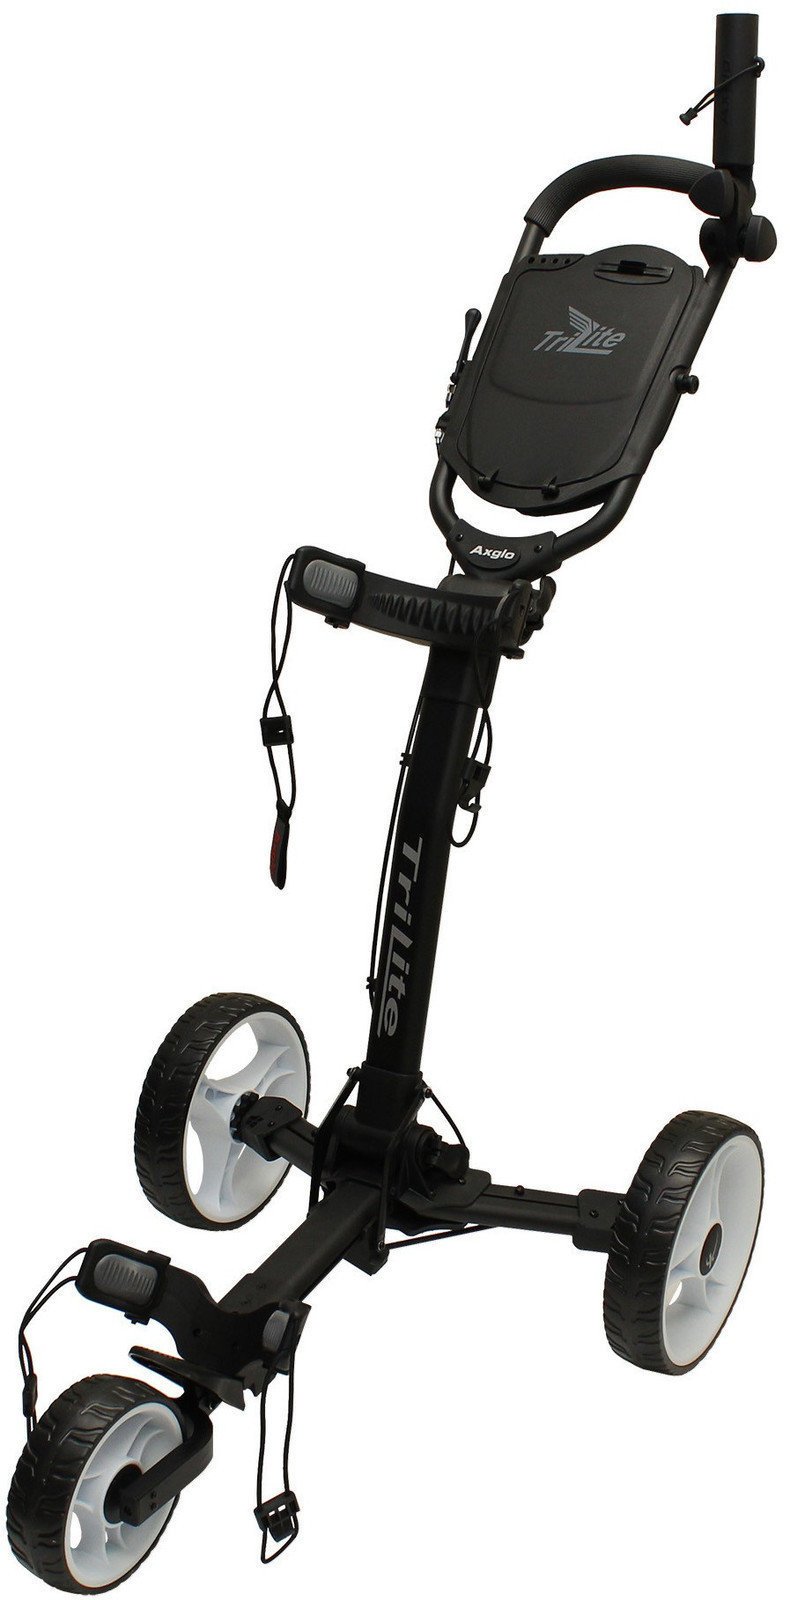 Wózek golfowy ręczny Axglo TriLite Black/White Wózek golfowy ręczny